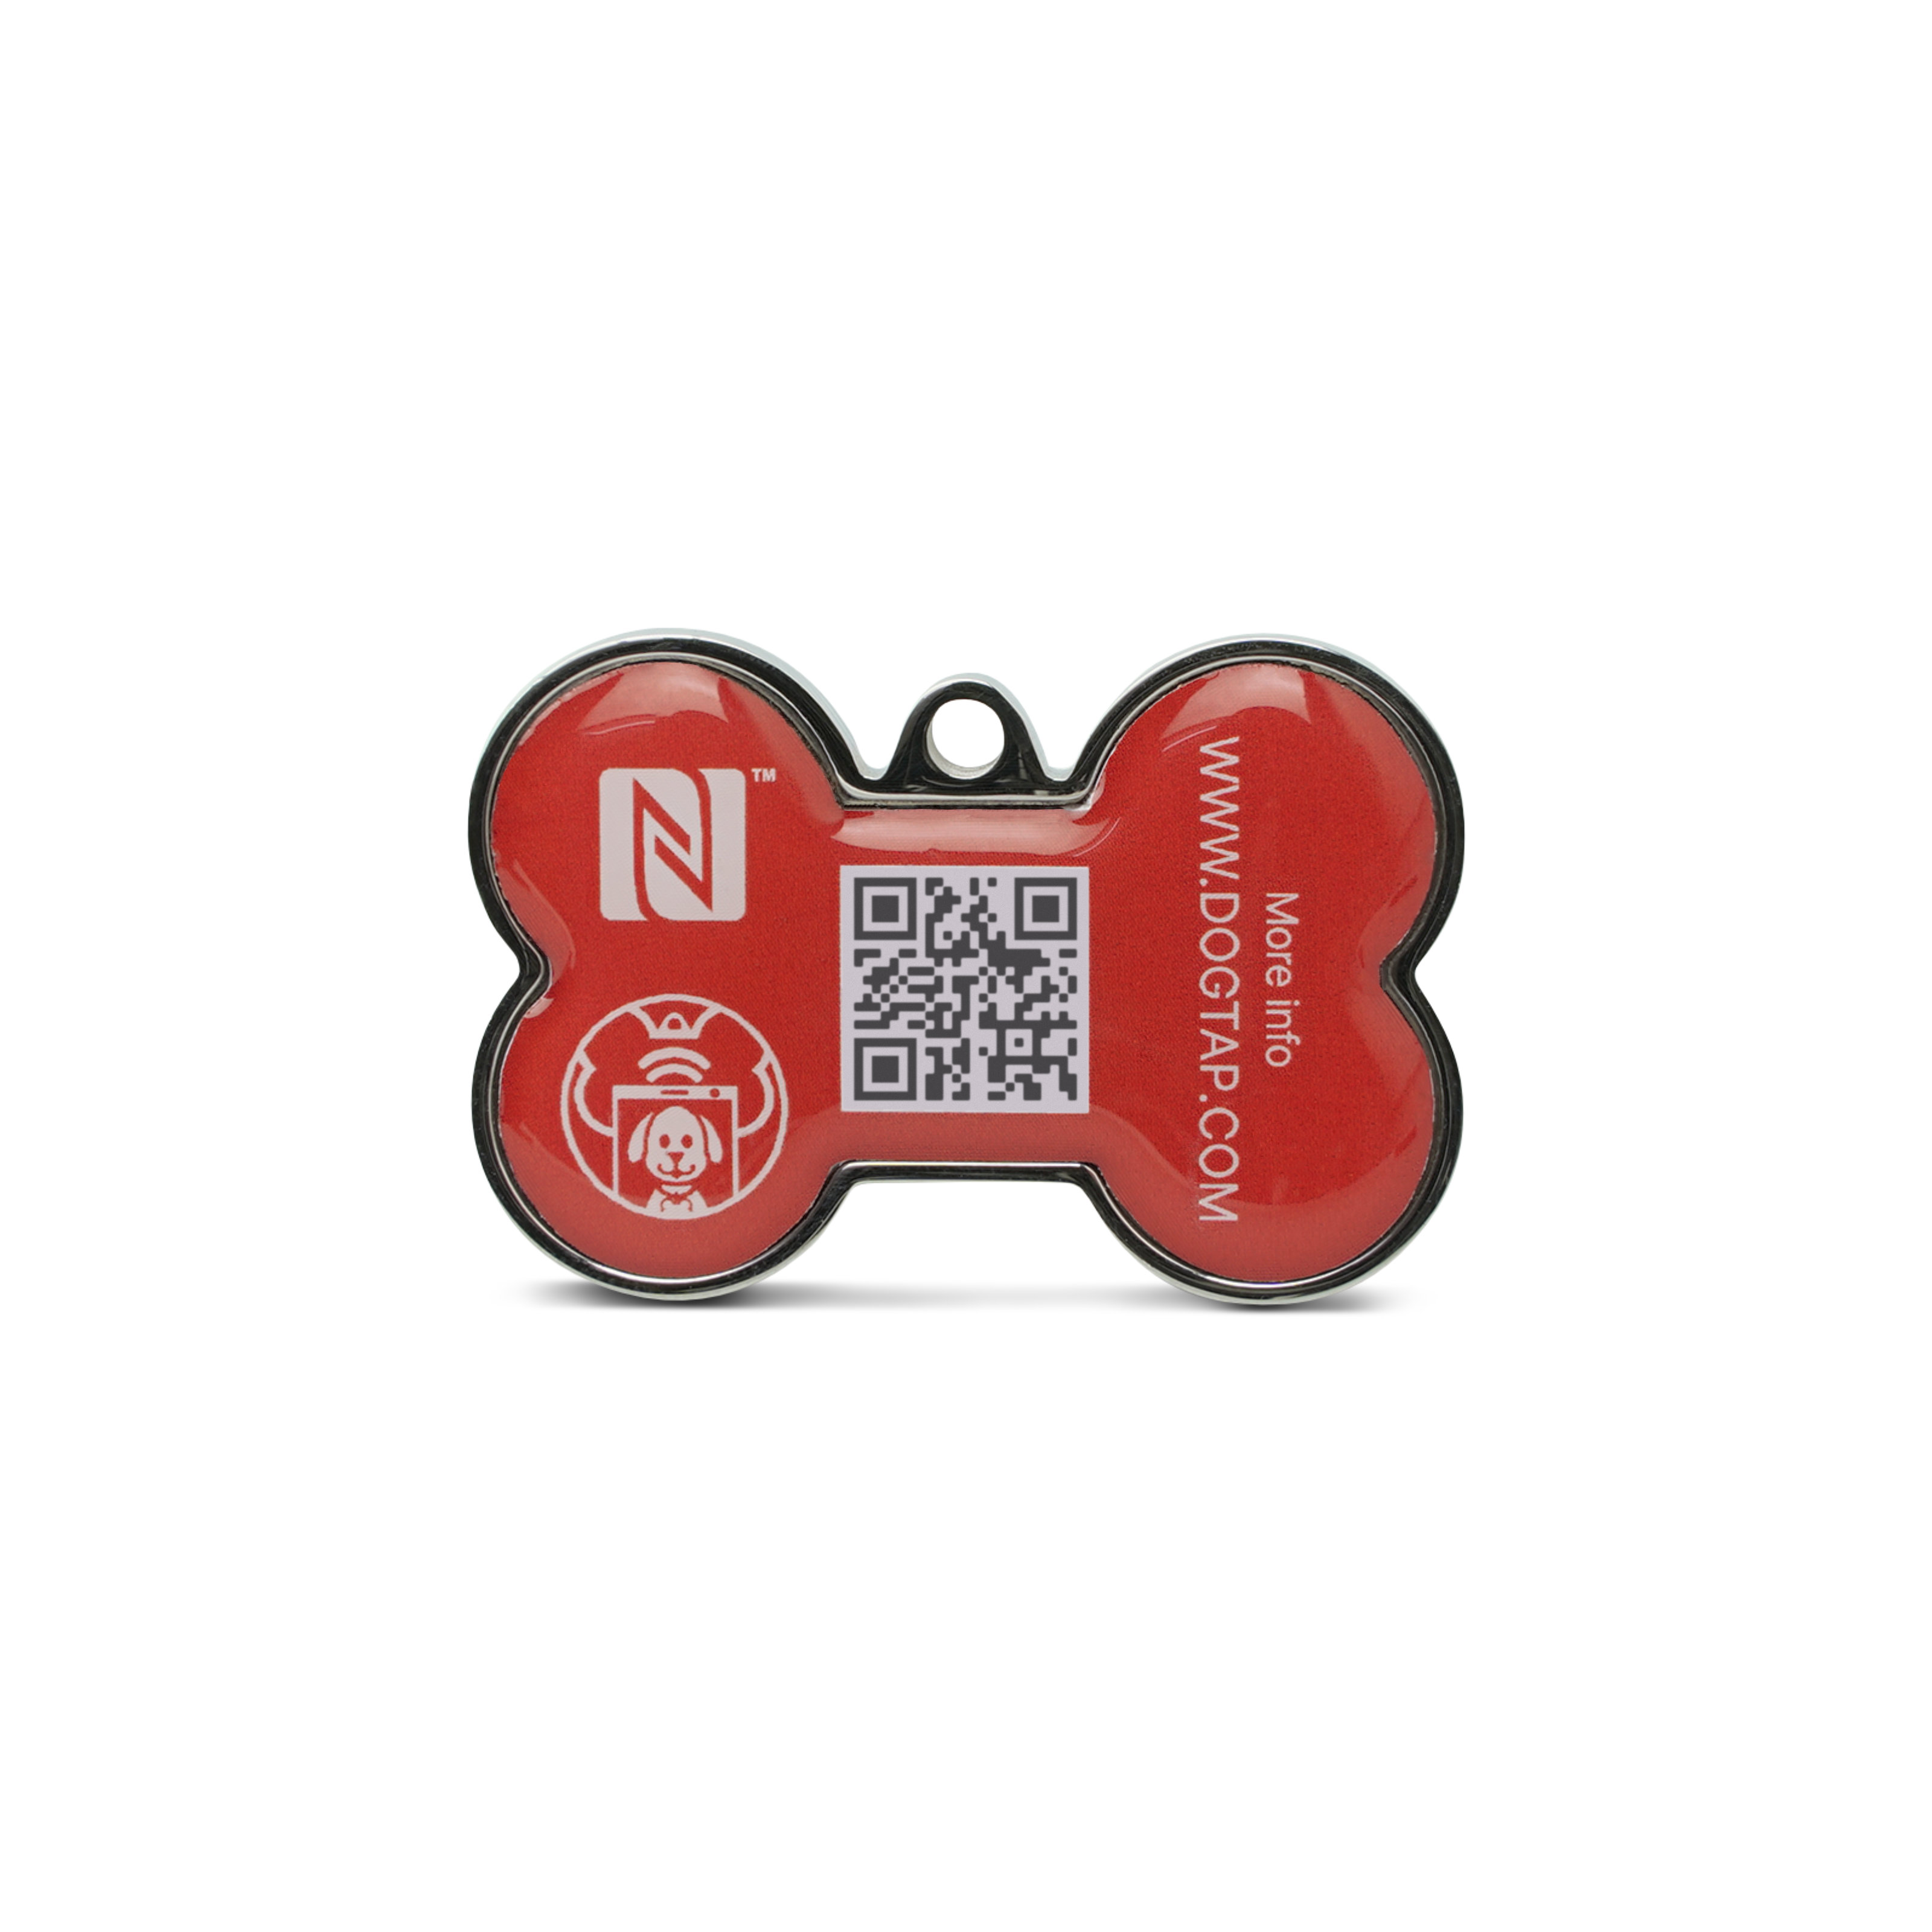 Dogtap Solid - Digital dog tag - PVC / Metal - 41.6 x 28.5 x 4.6 mm - red